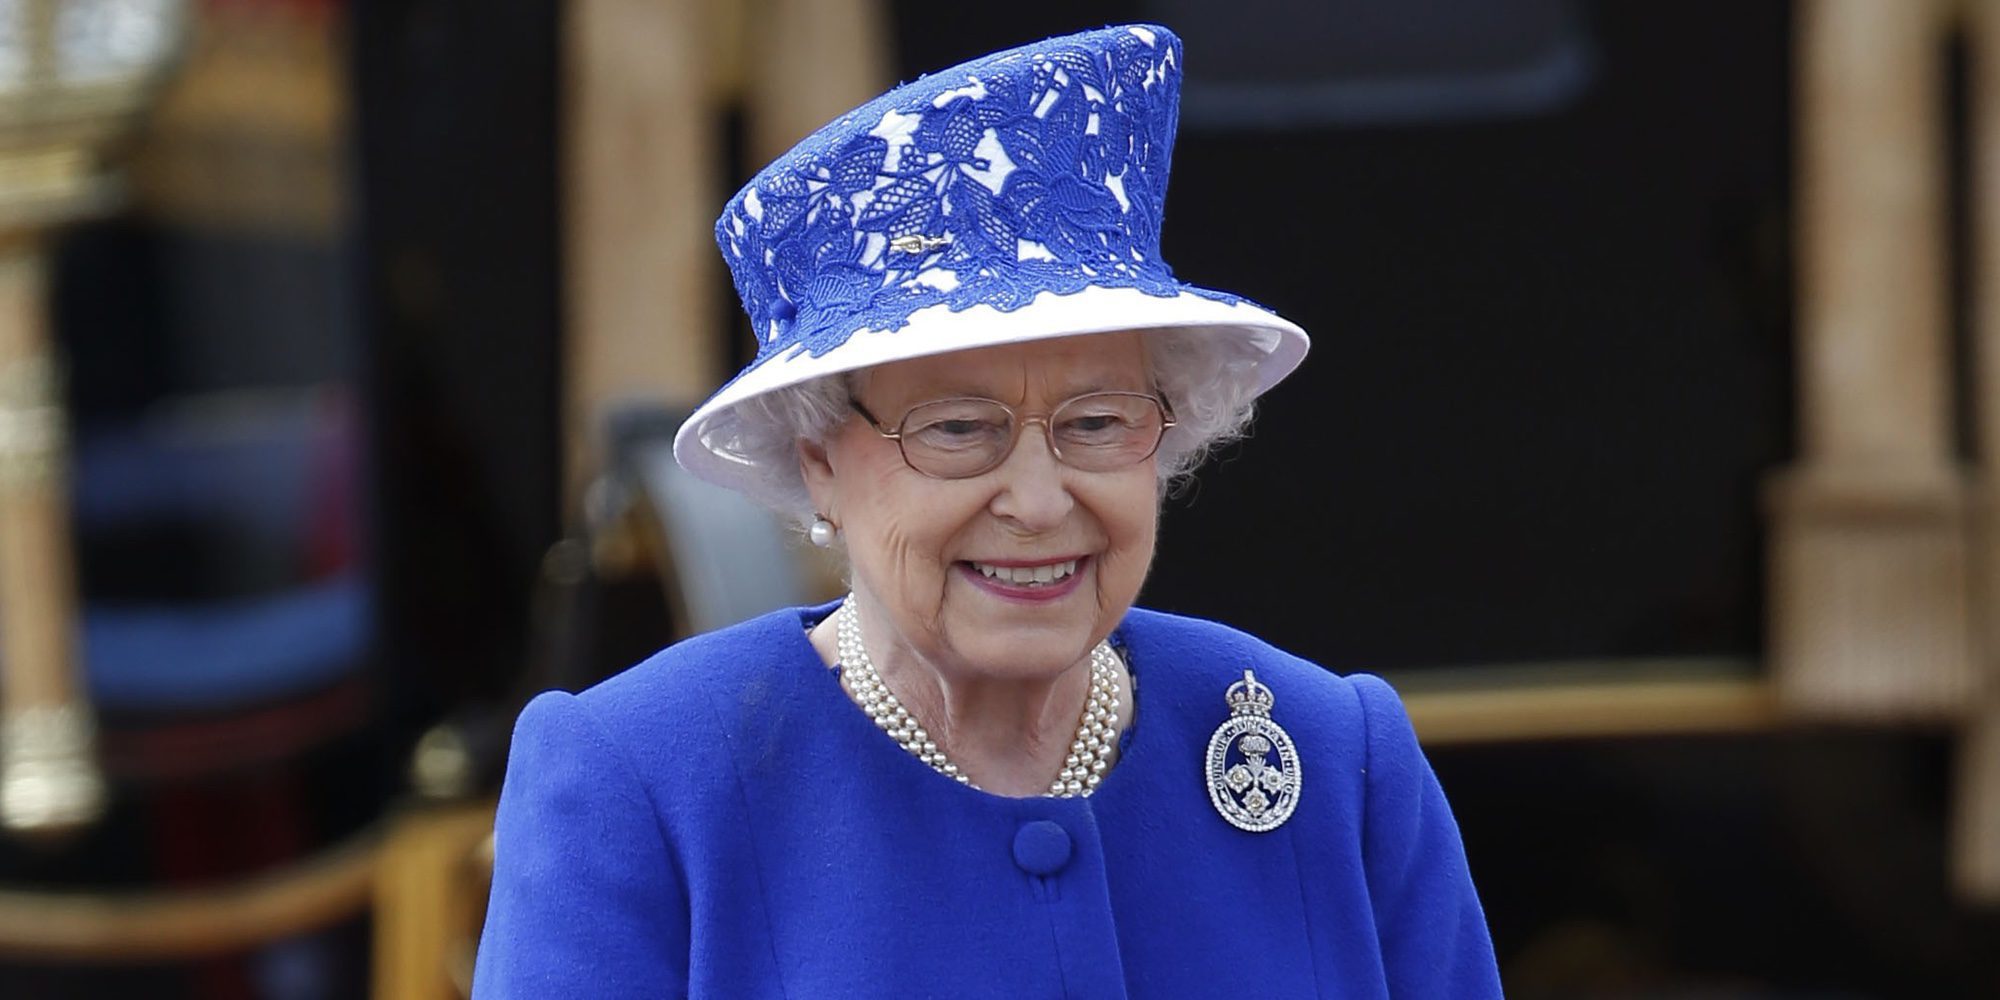 Jubileo de Zafiro: La Reina Isabel II celebra sus 65 años en el Trono con un recuerdo a su padre